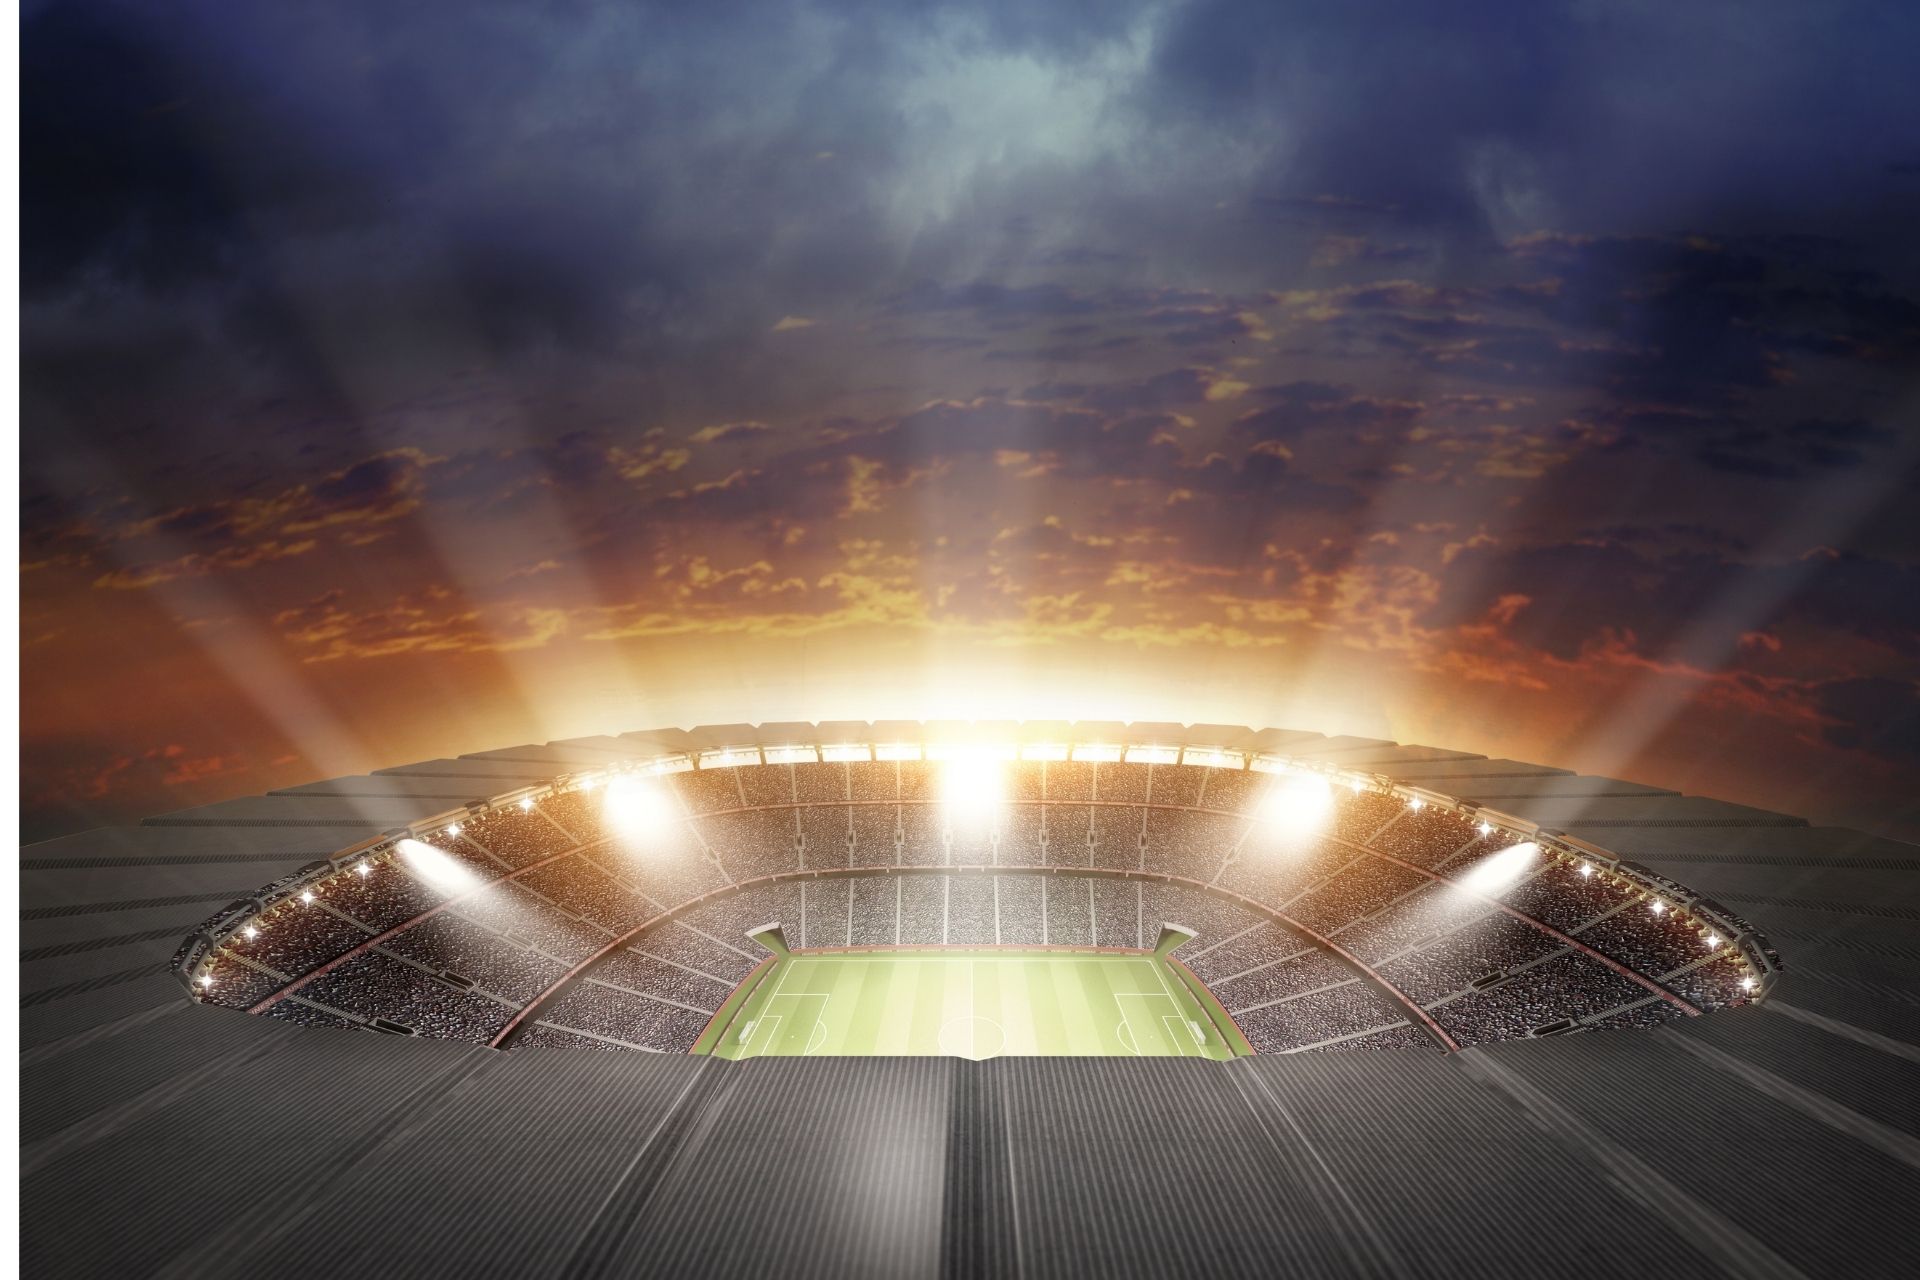 Dnia 2021-12-14 20:00 na obiekcie Etihad Stadium odbyło się spotkanie Manchester City - Leeds - 7-0